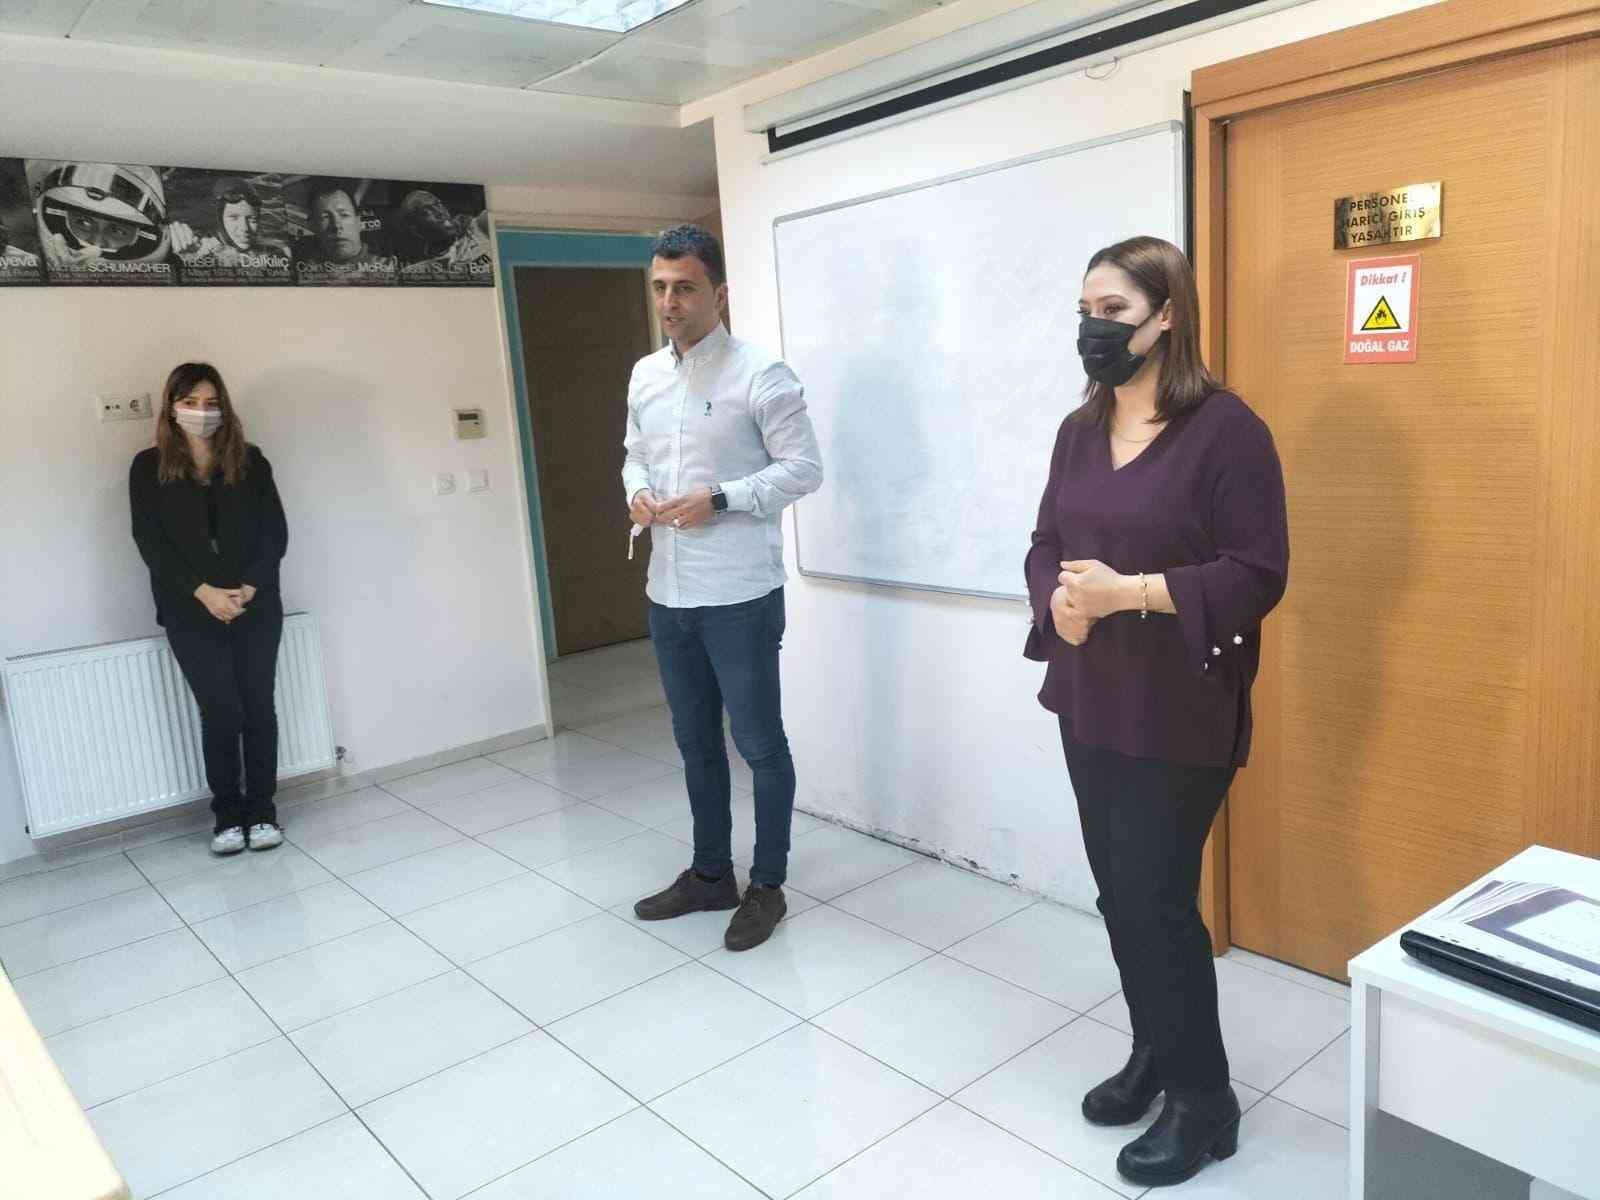 Maltepe Belediyesi Spor İşleri Müdürlüğü ve American Life Maltepe işbirliğiyle düzenlenen “Spor İngilizcesi ve Temel İngilizce” kursunu başarıyla ...